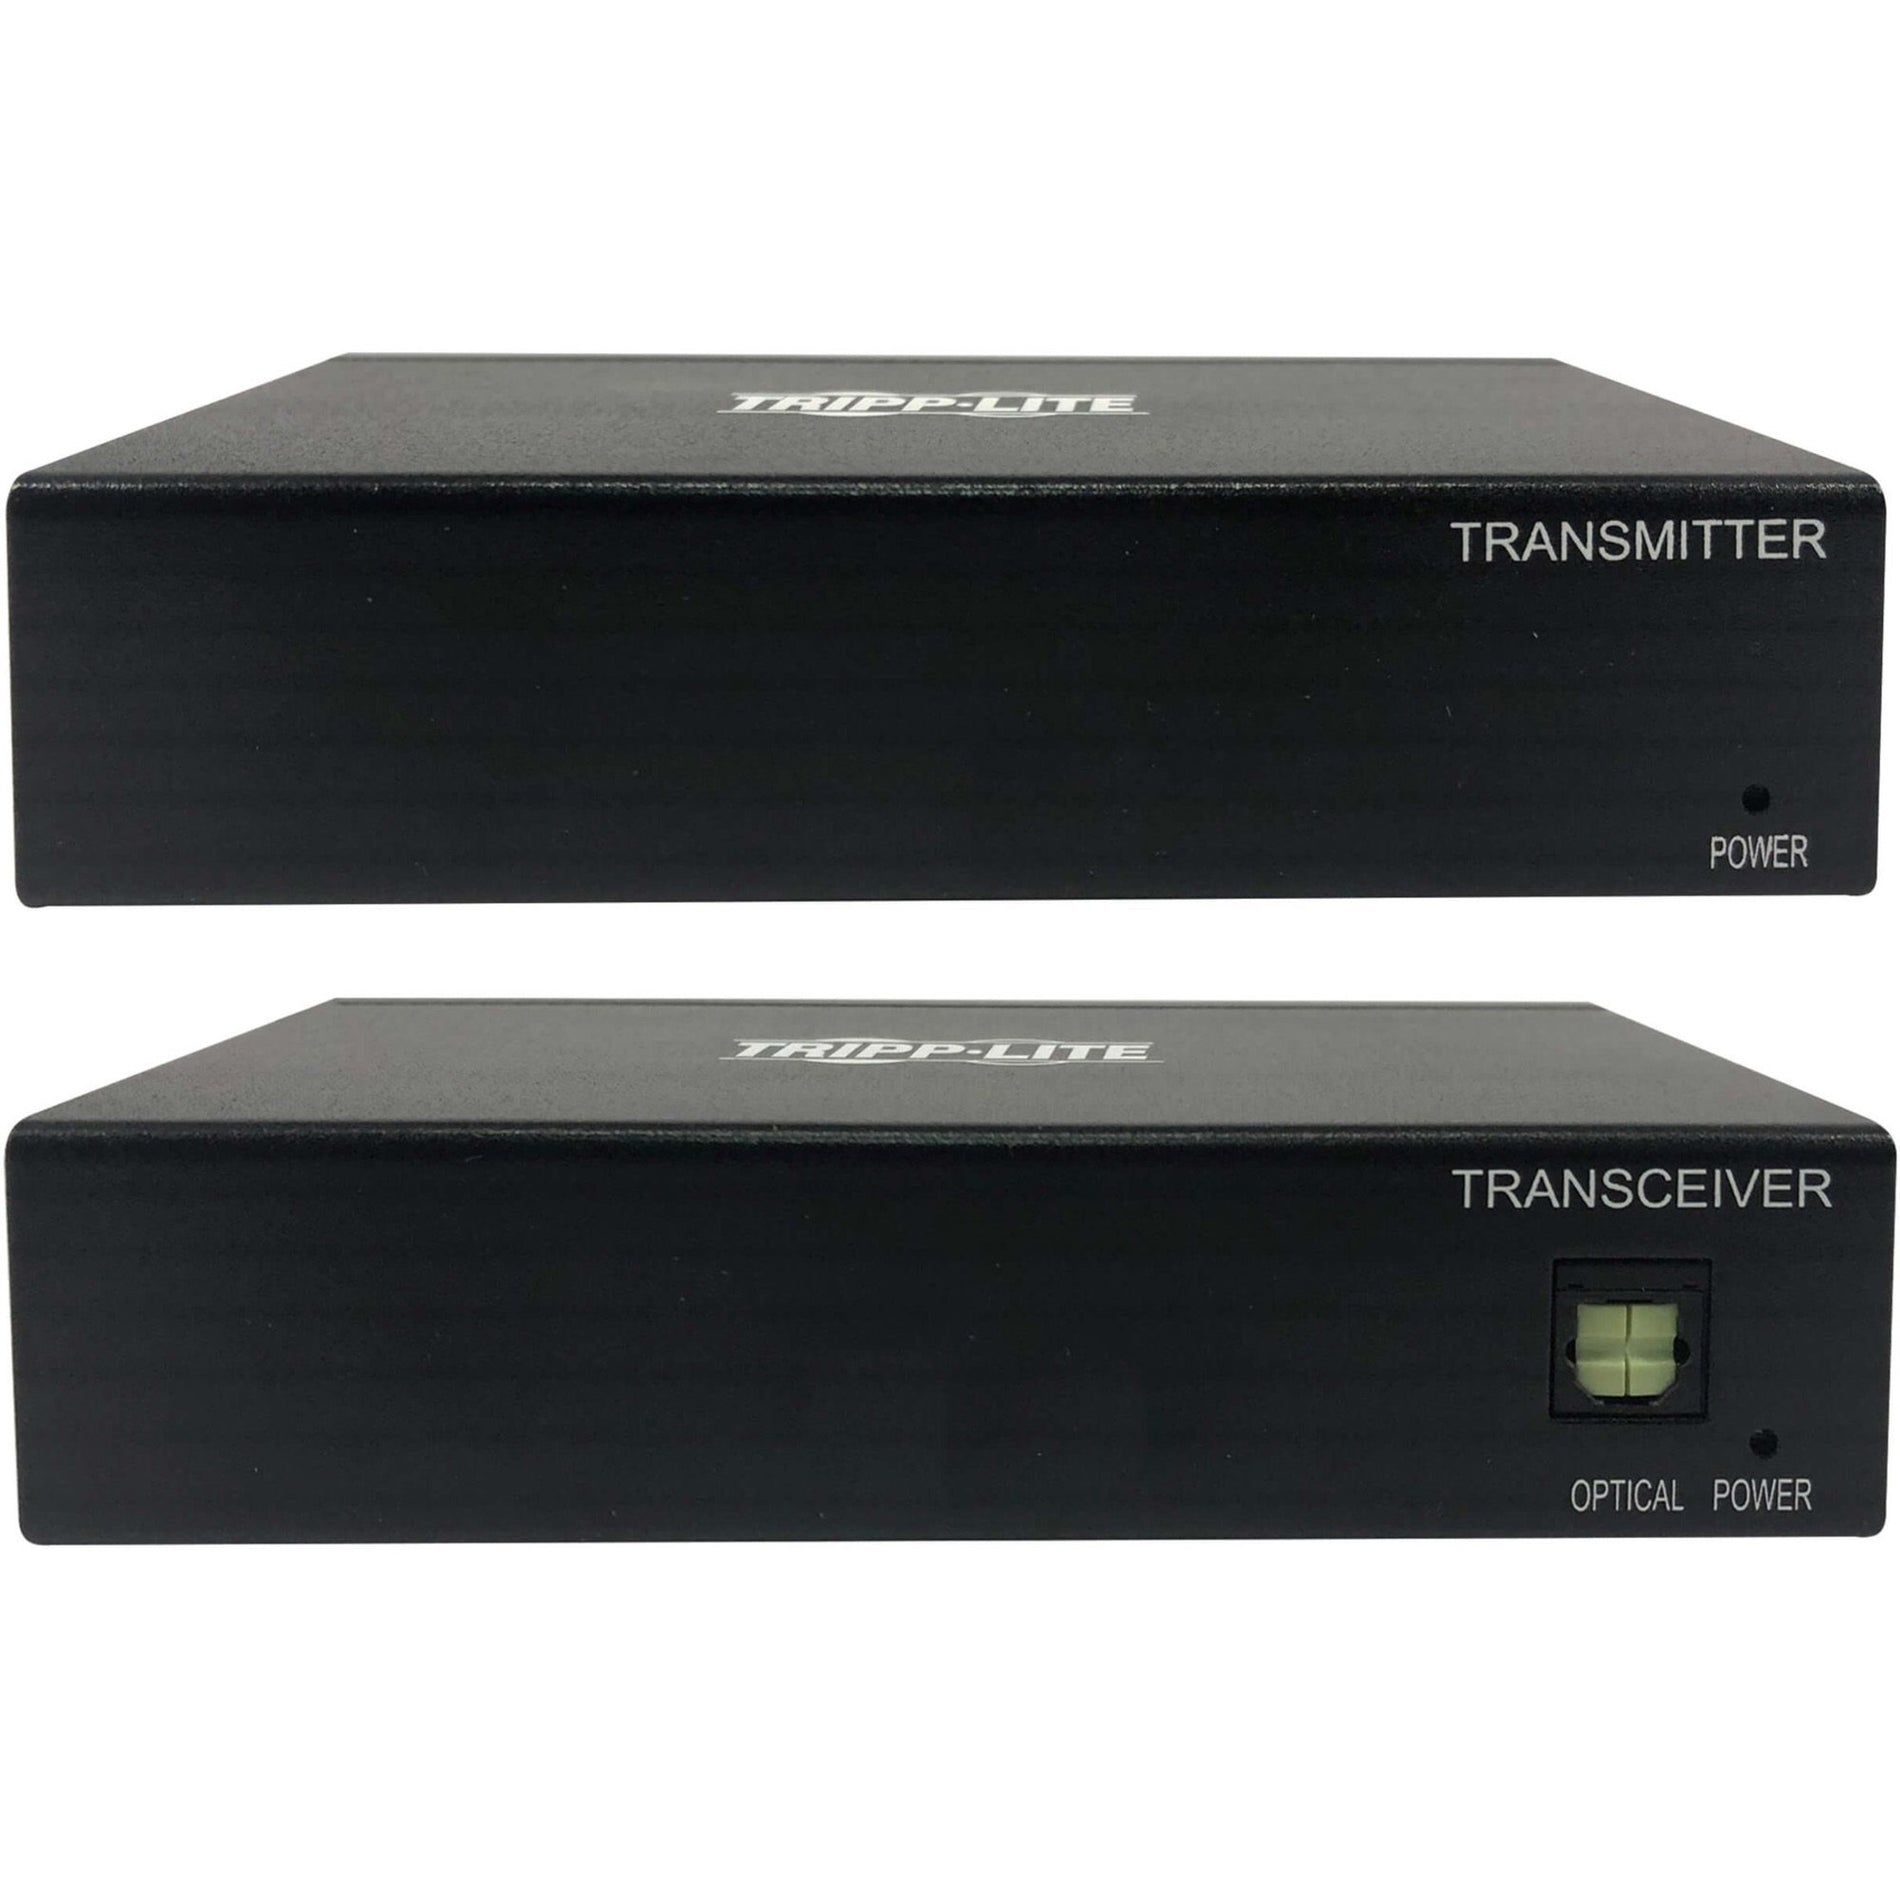 Tripp Lite B127A-111-BDTH Video Extender Transceiver 4K UHD 3840 x 2160 TAA Compliant